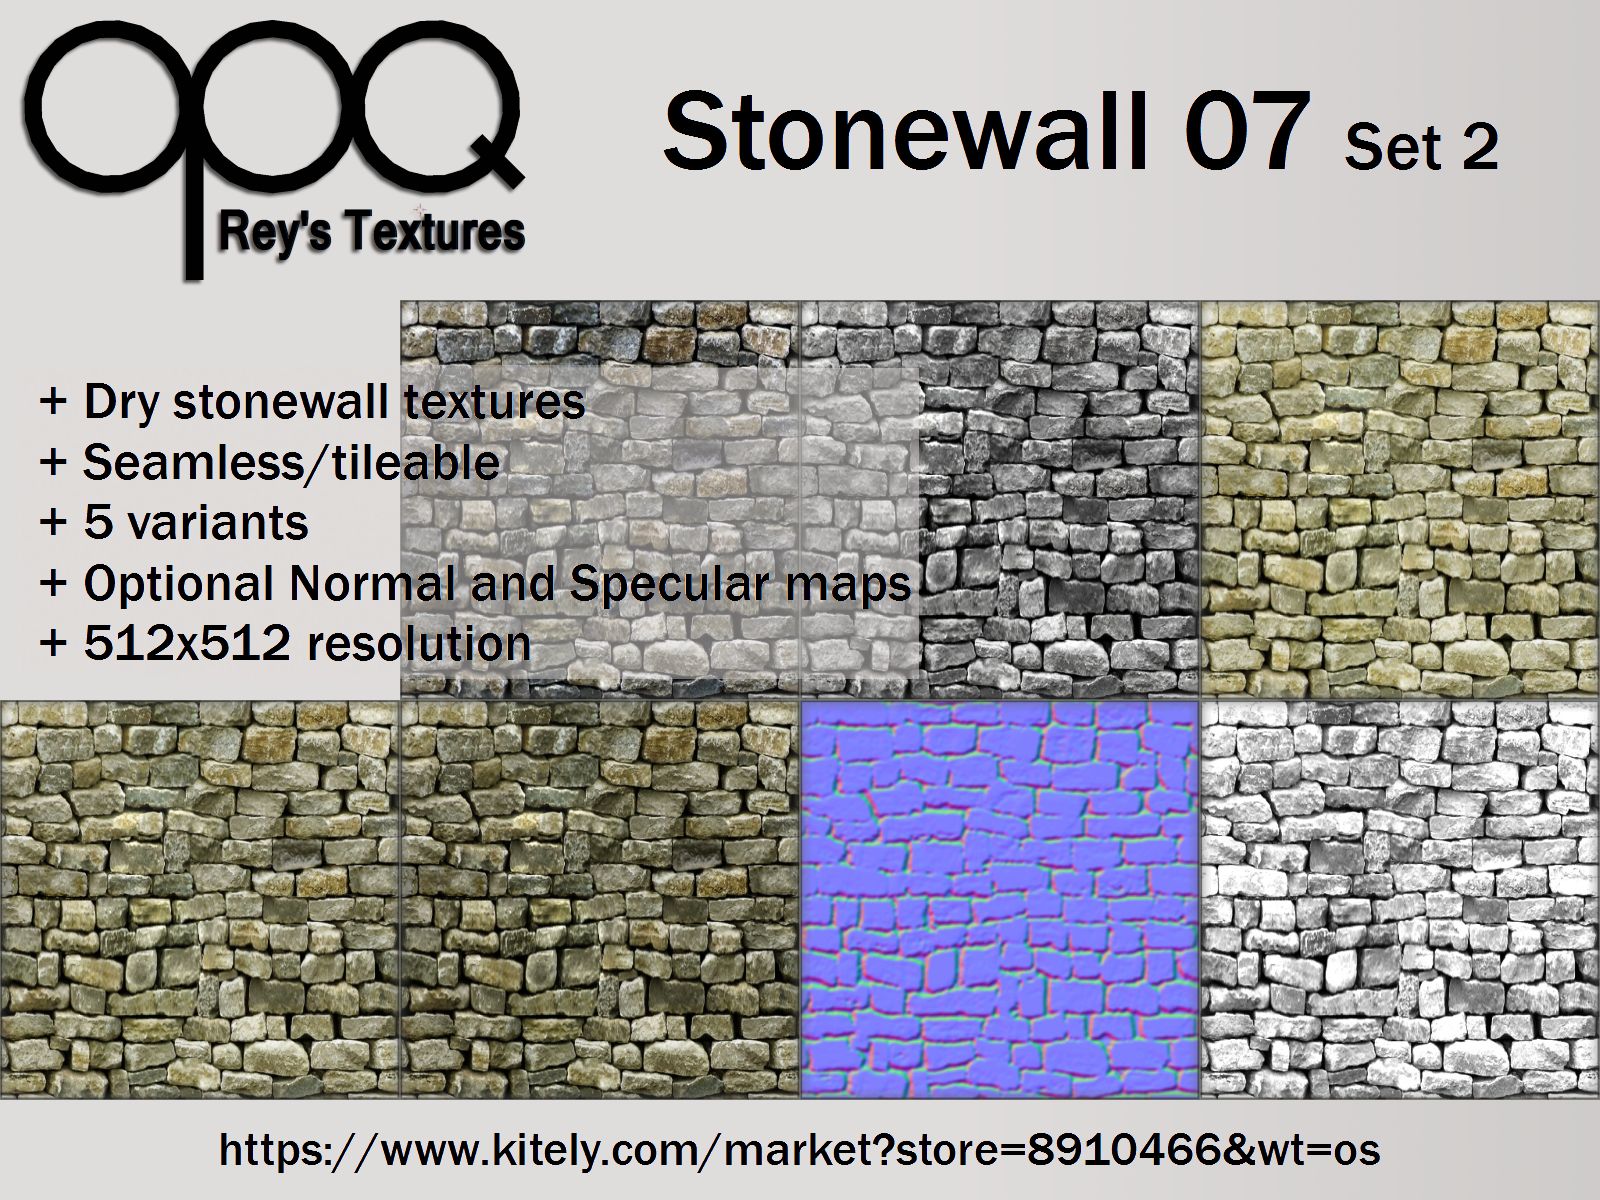 Rey's Stonewall 07 Set 2 Poster Kitely.jpg